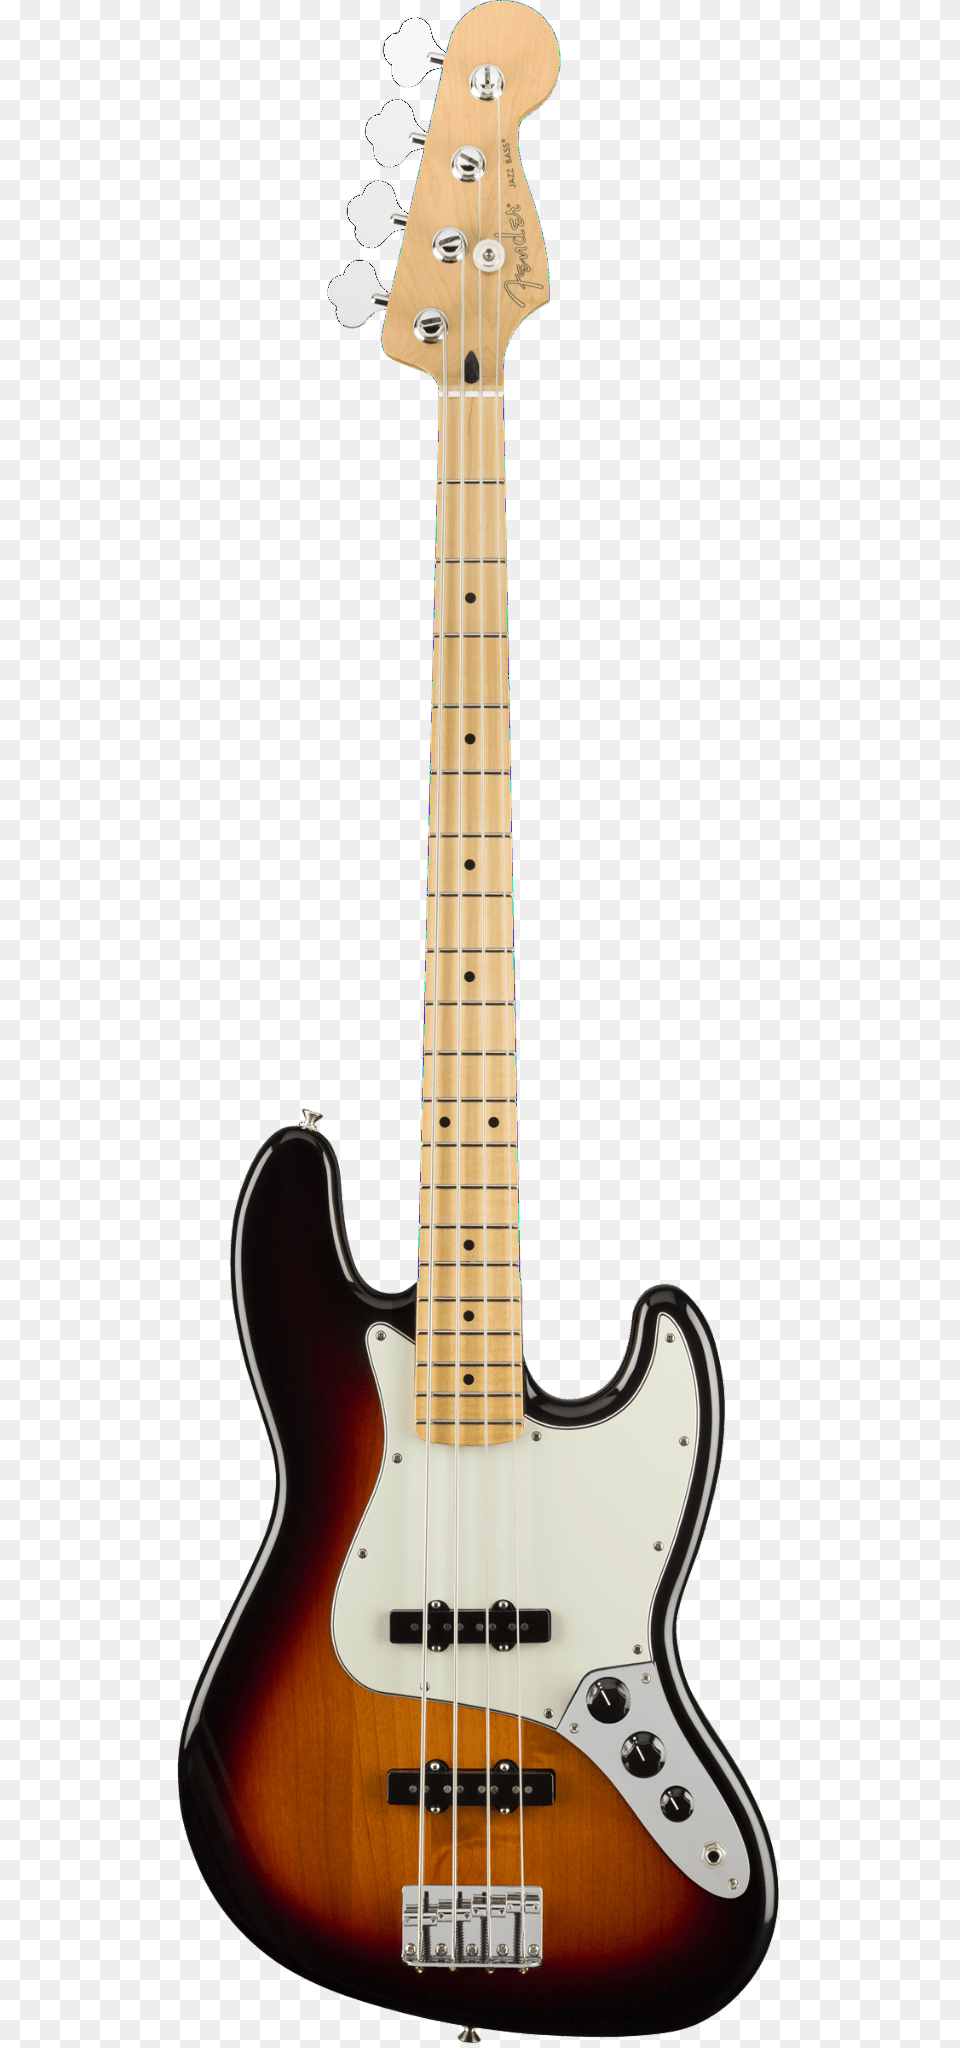 Fender Standard Precision Bass Guitar Maple Brown, Bass Guitar, Musical Instrument Free Png